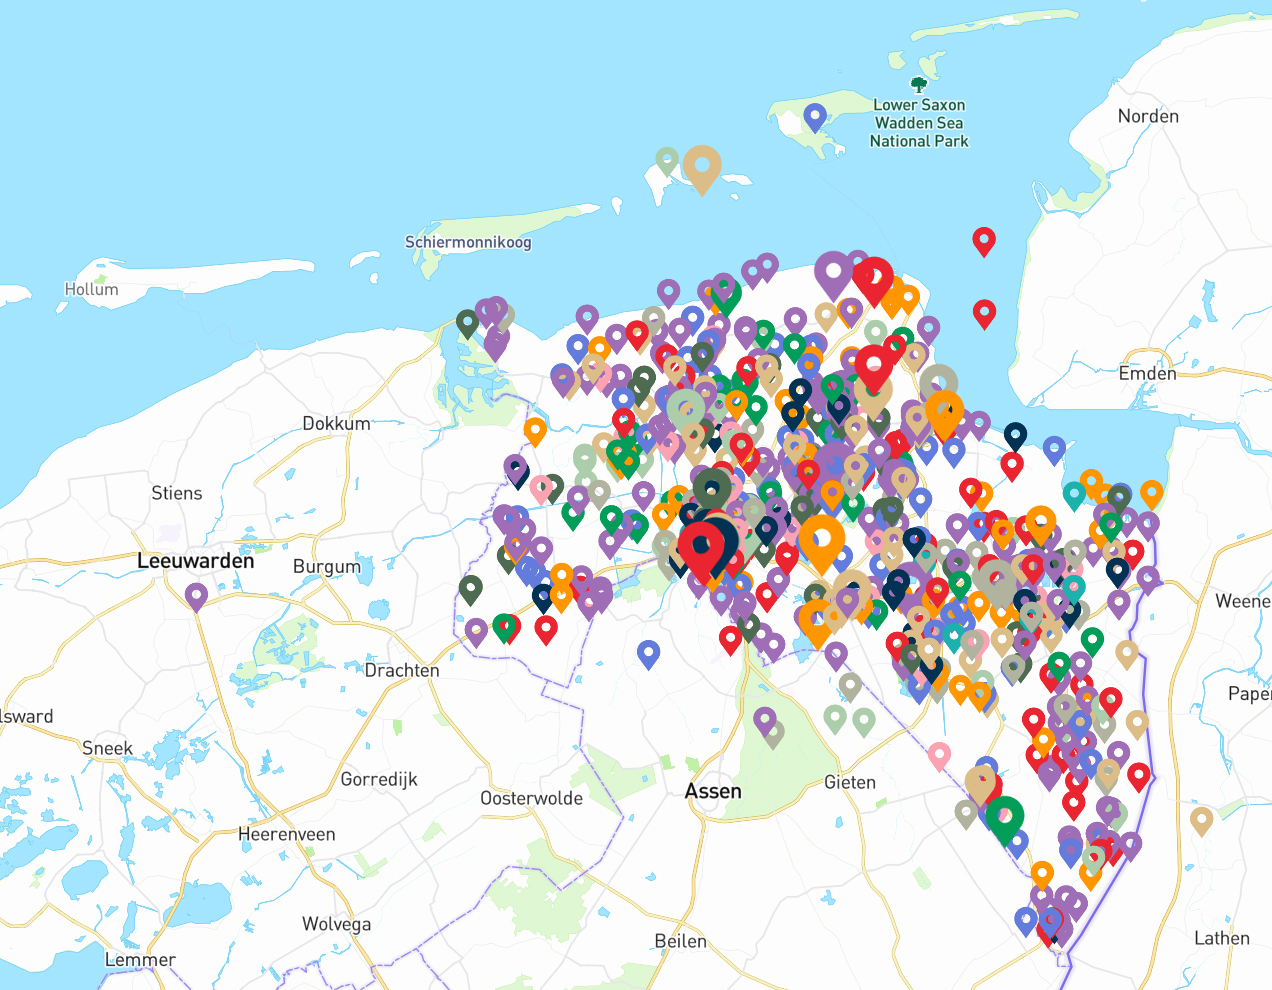 Kaart van Noord-Nederland met locatie-pointers in de provincie Groningen die aangeven waar een project plaatsvindt.